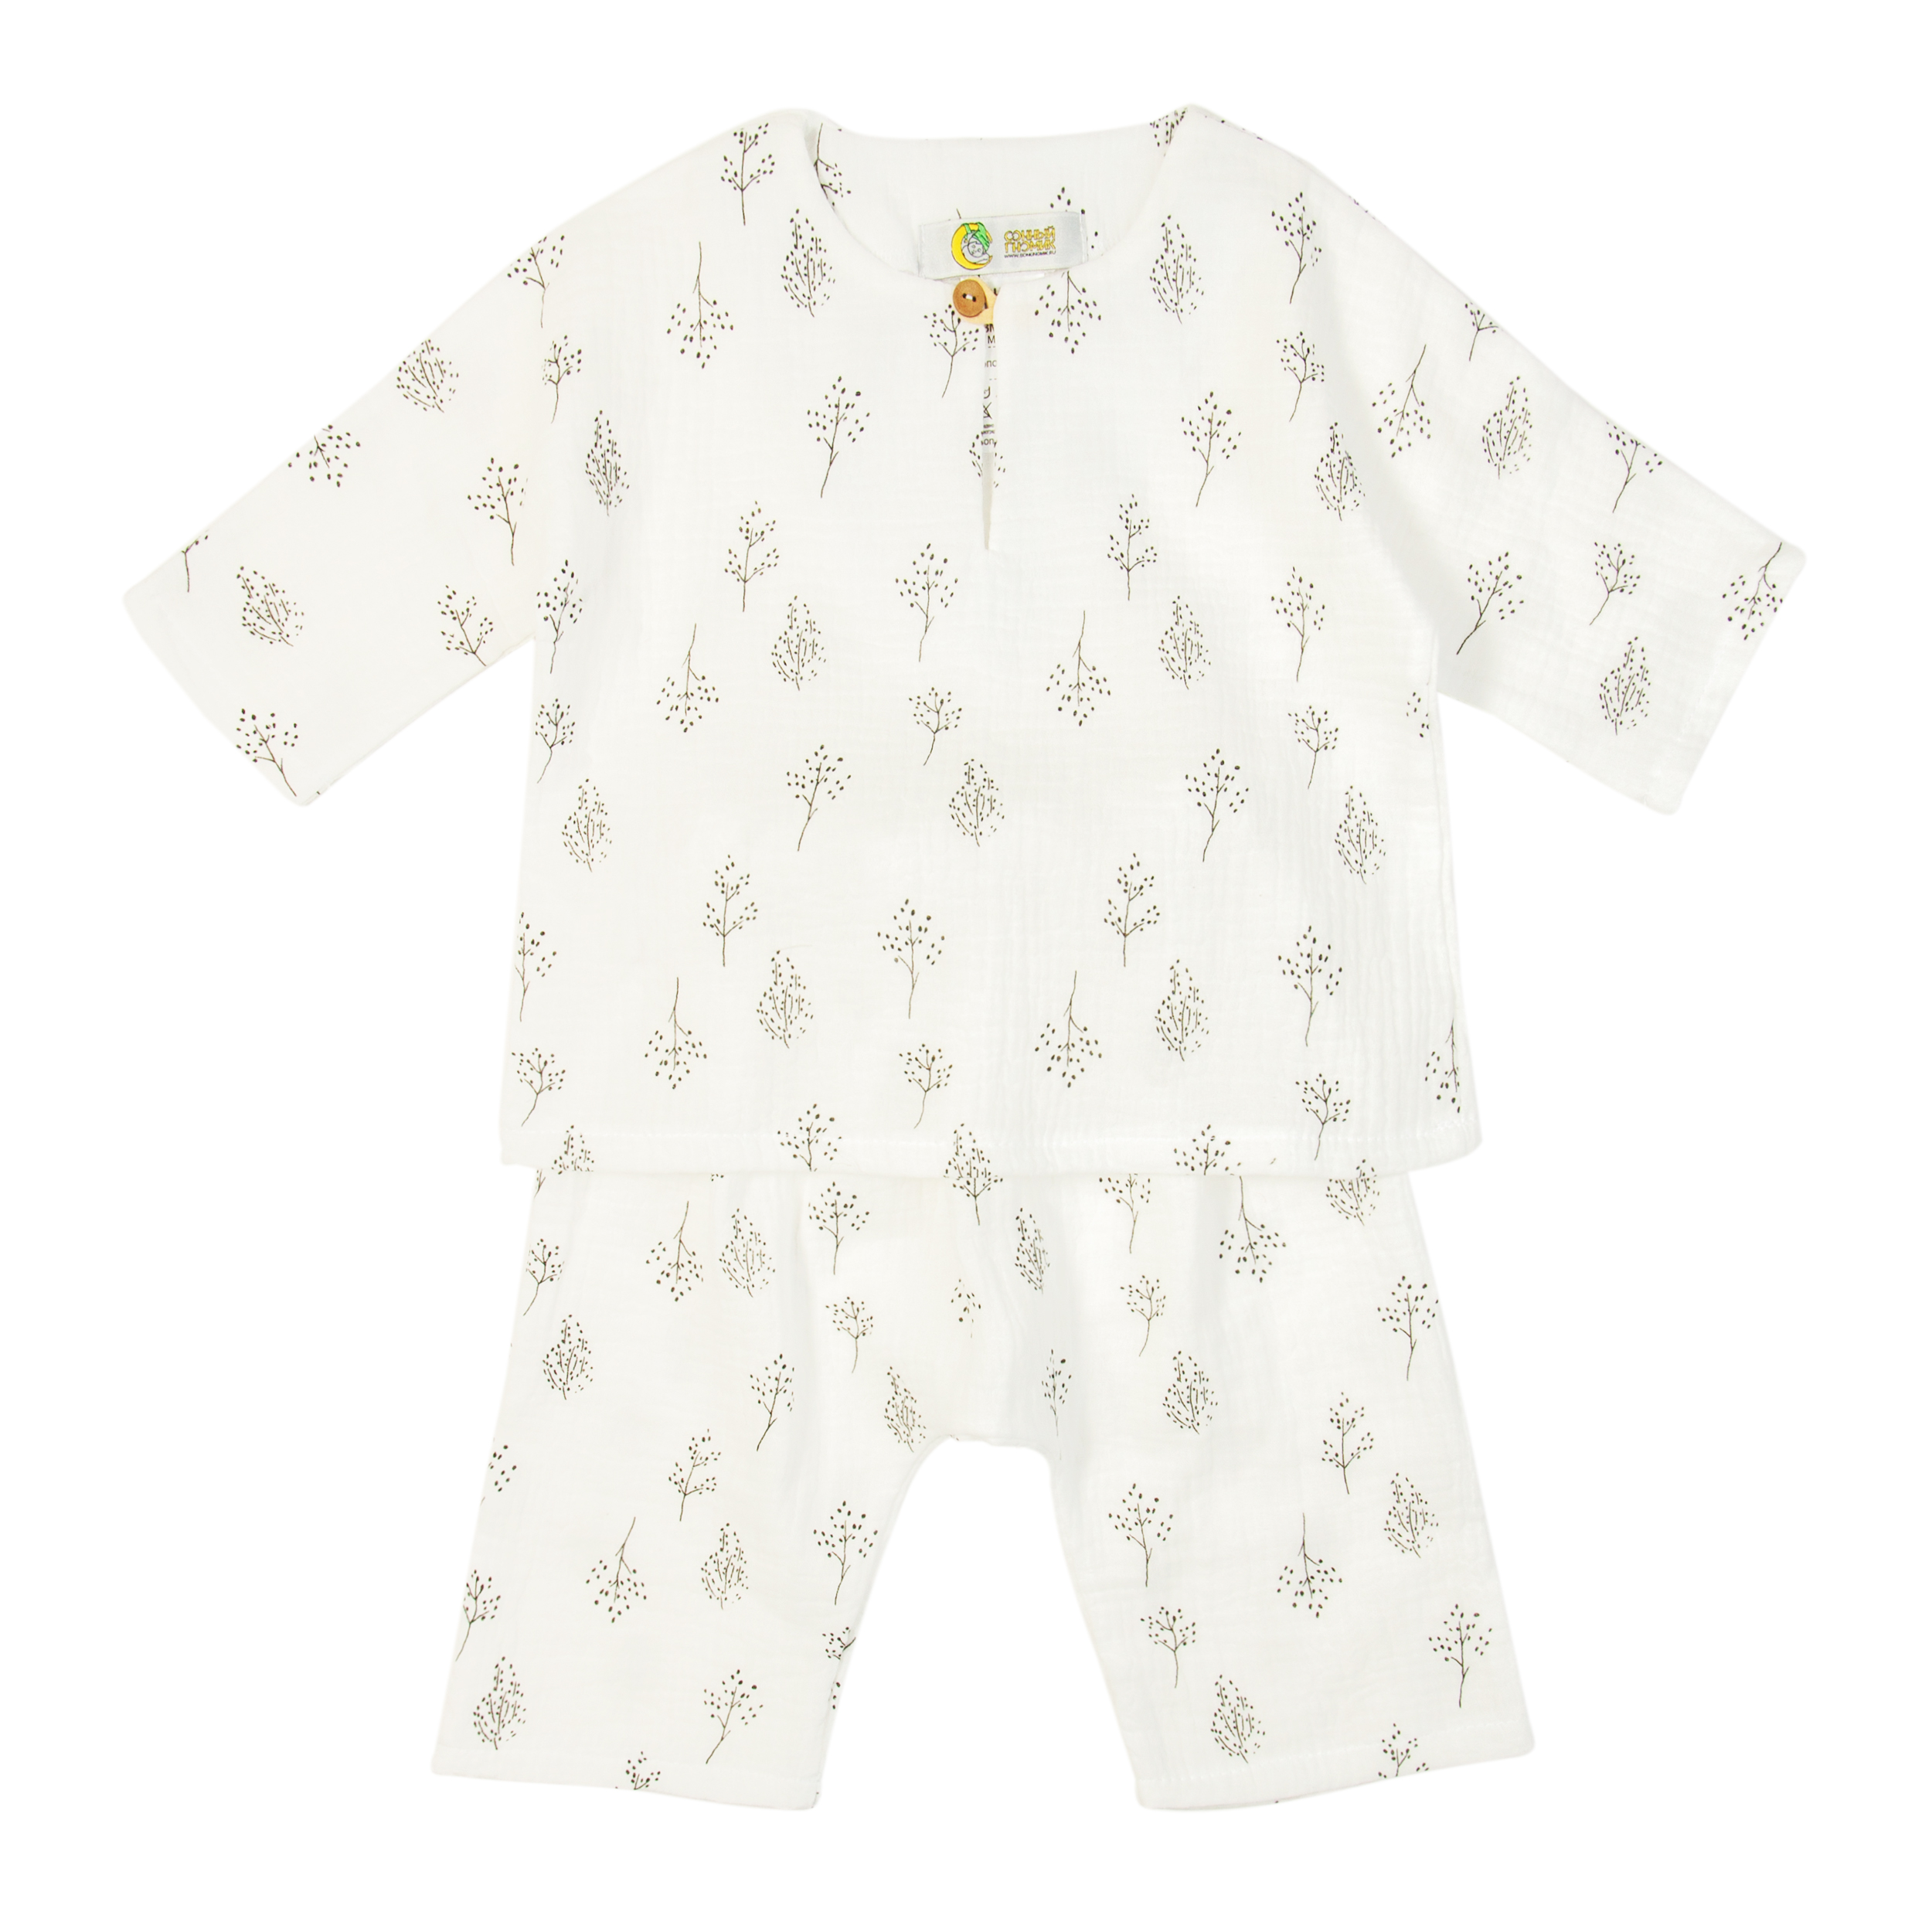 Комплект одежды детский Сонный гномик Самурай, белый, 80